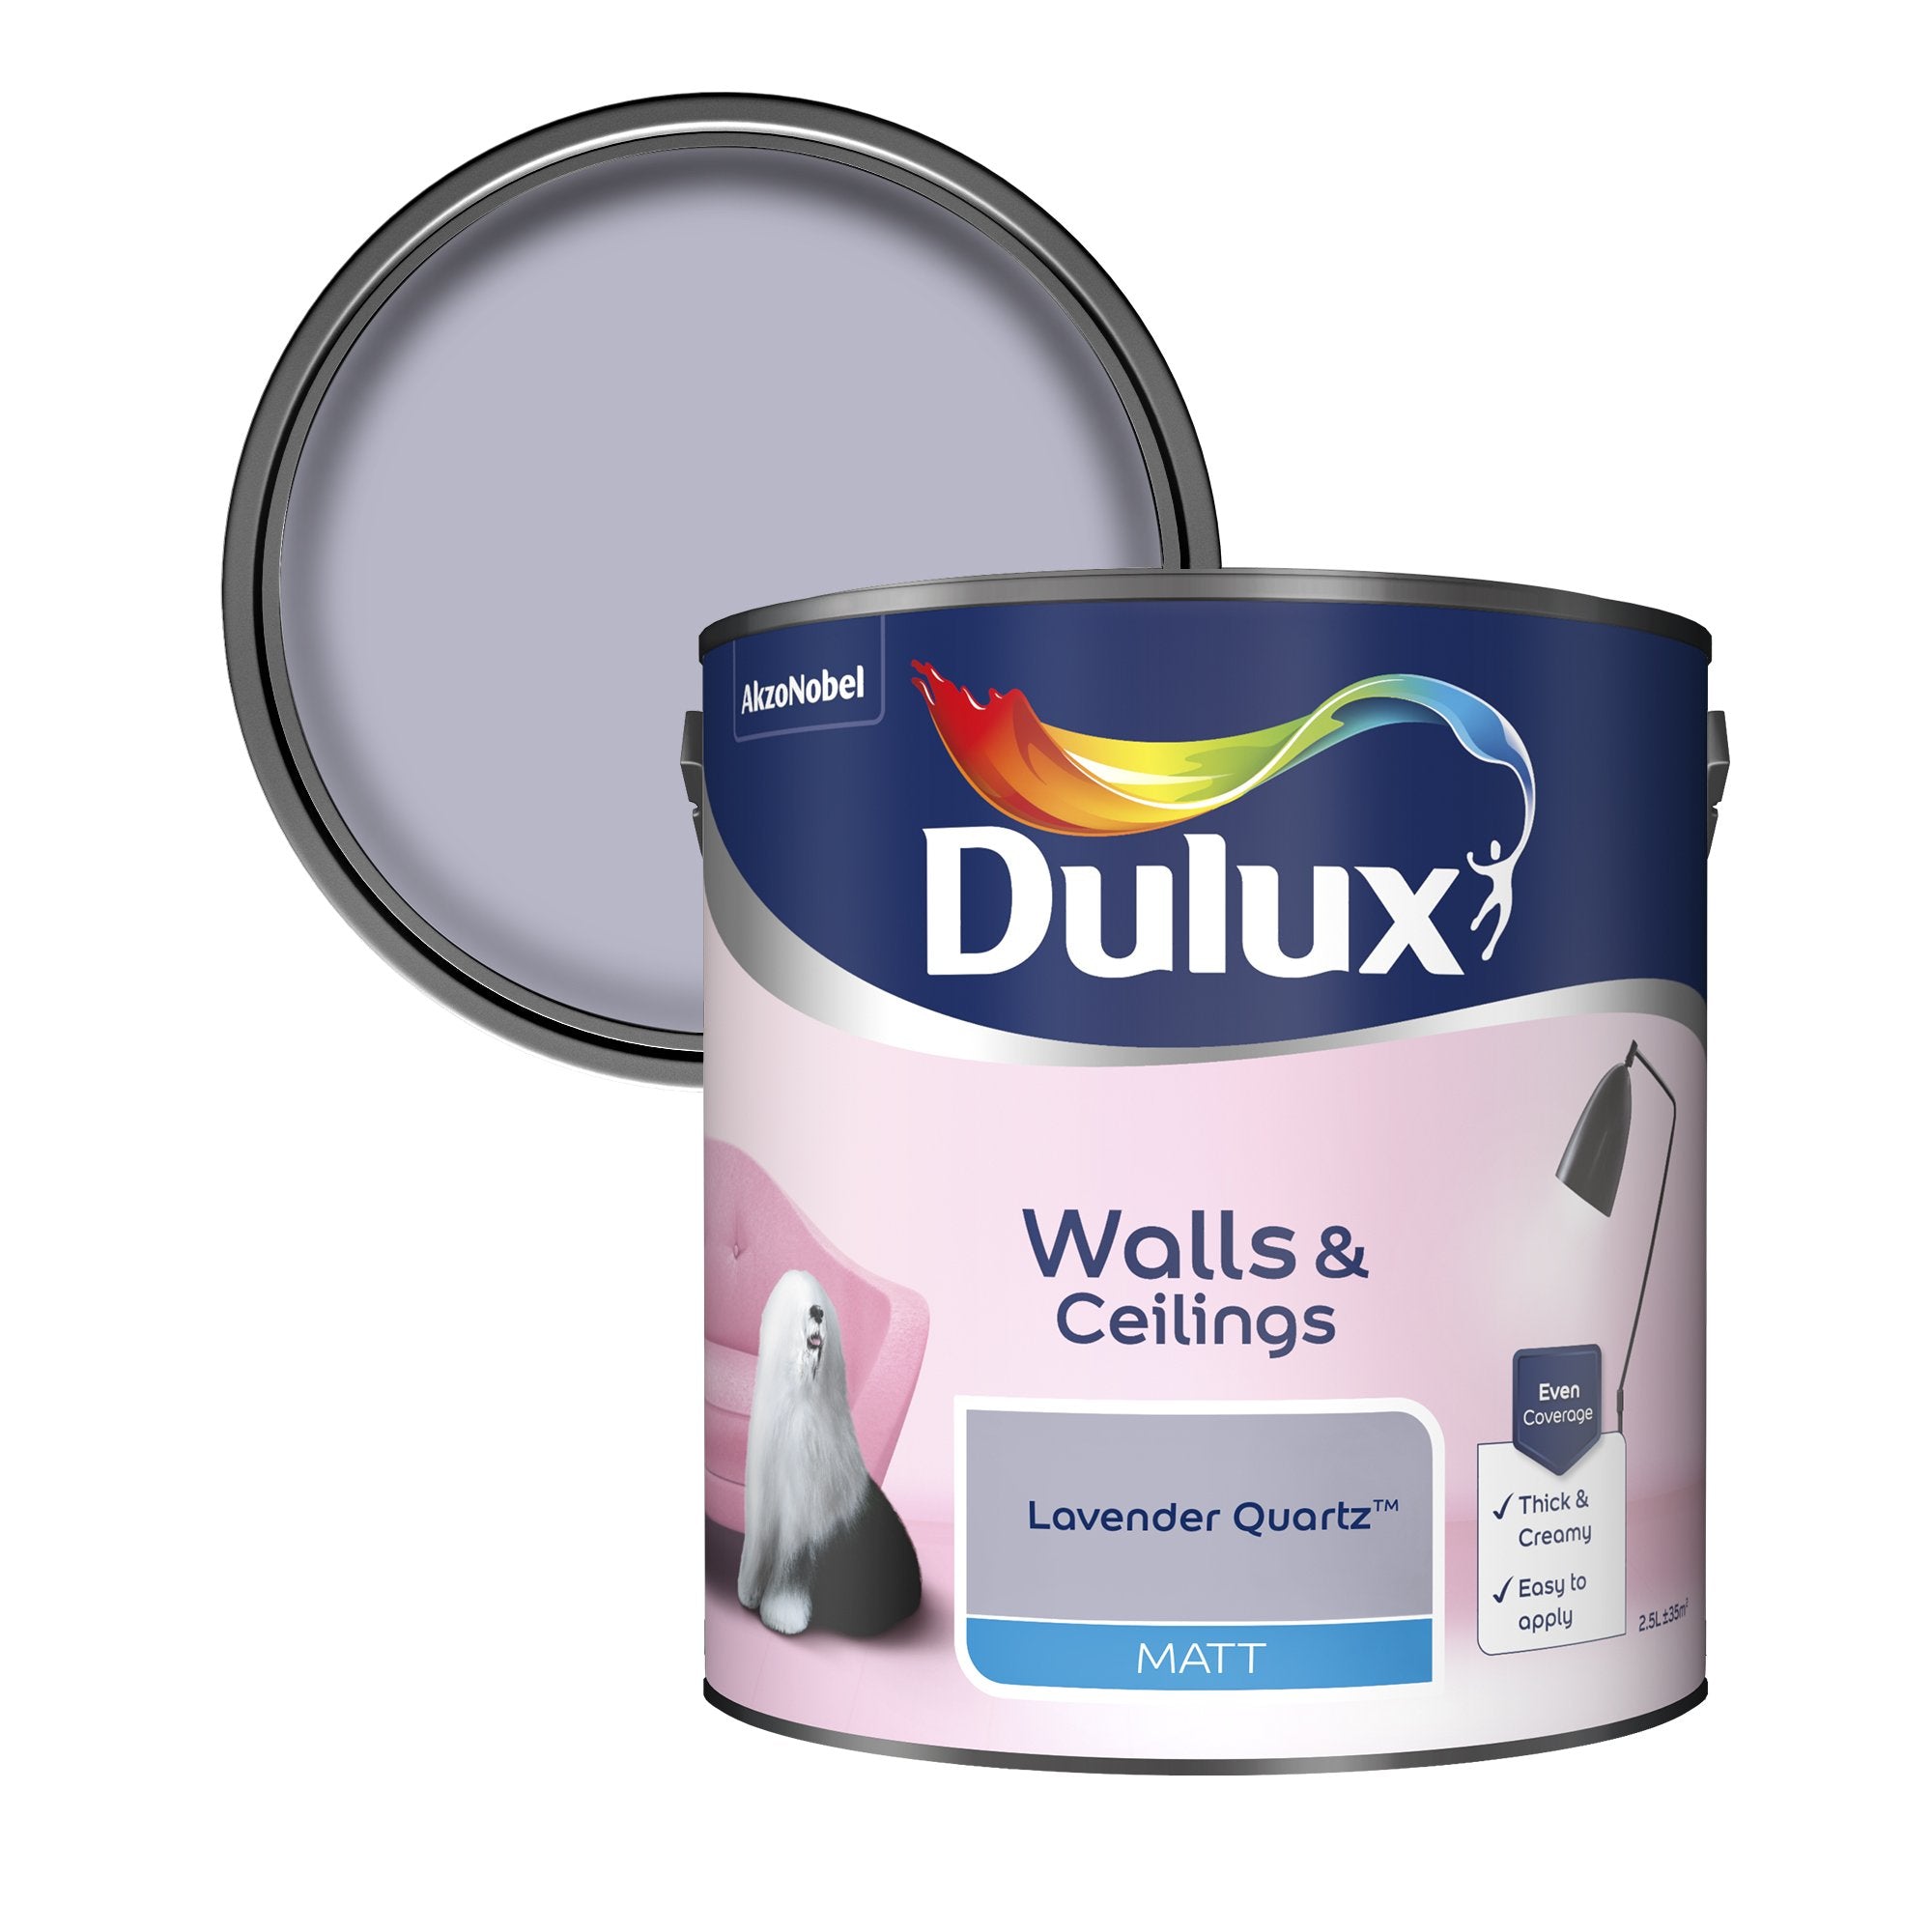 Dulux-Matt-Emulsion-Paint-For-Walls-And-Ceilings-Lavender-Quartz-2.5L